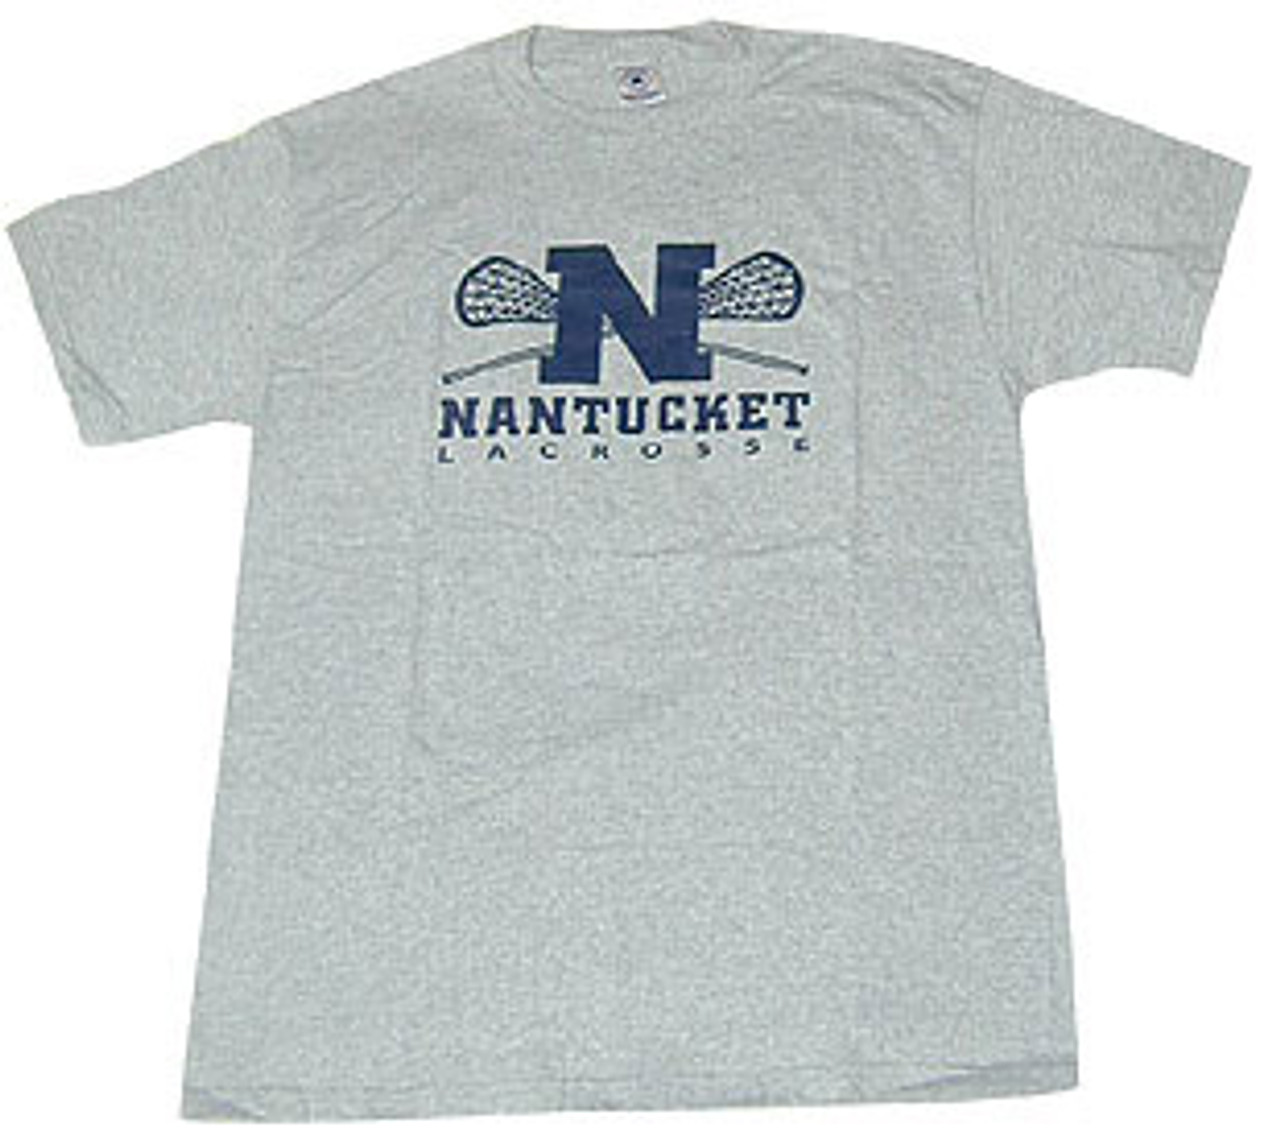 Nantucket Lacrosse T - The Sunken Ship